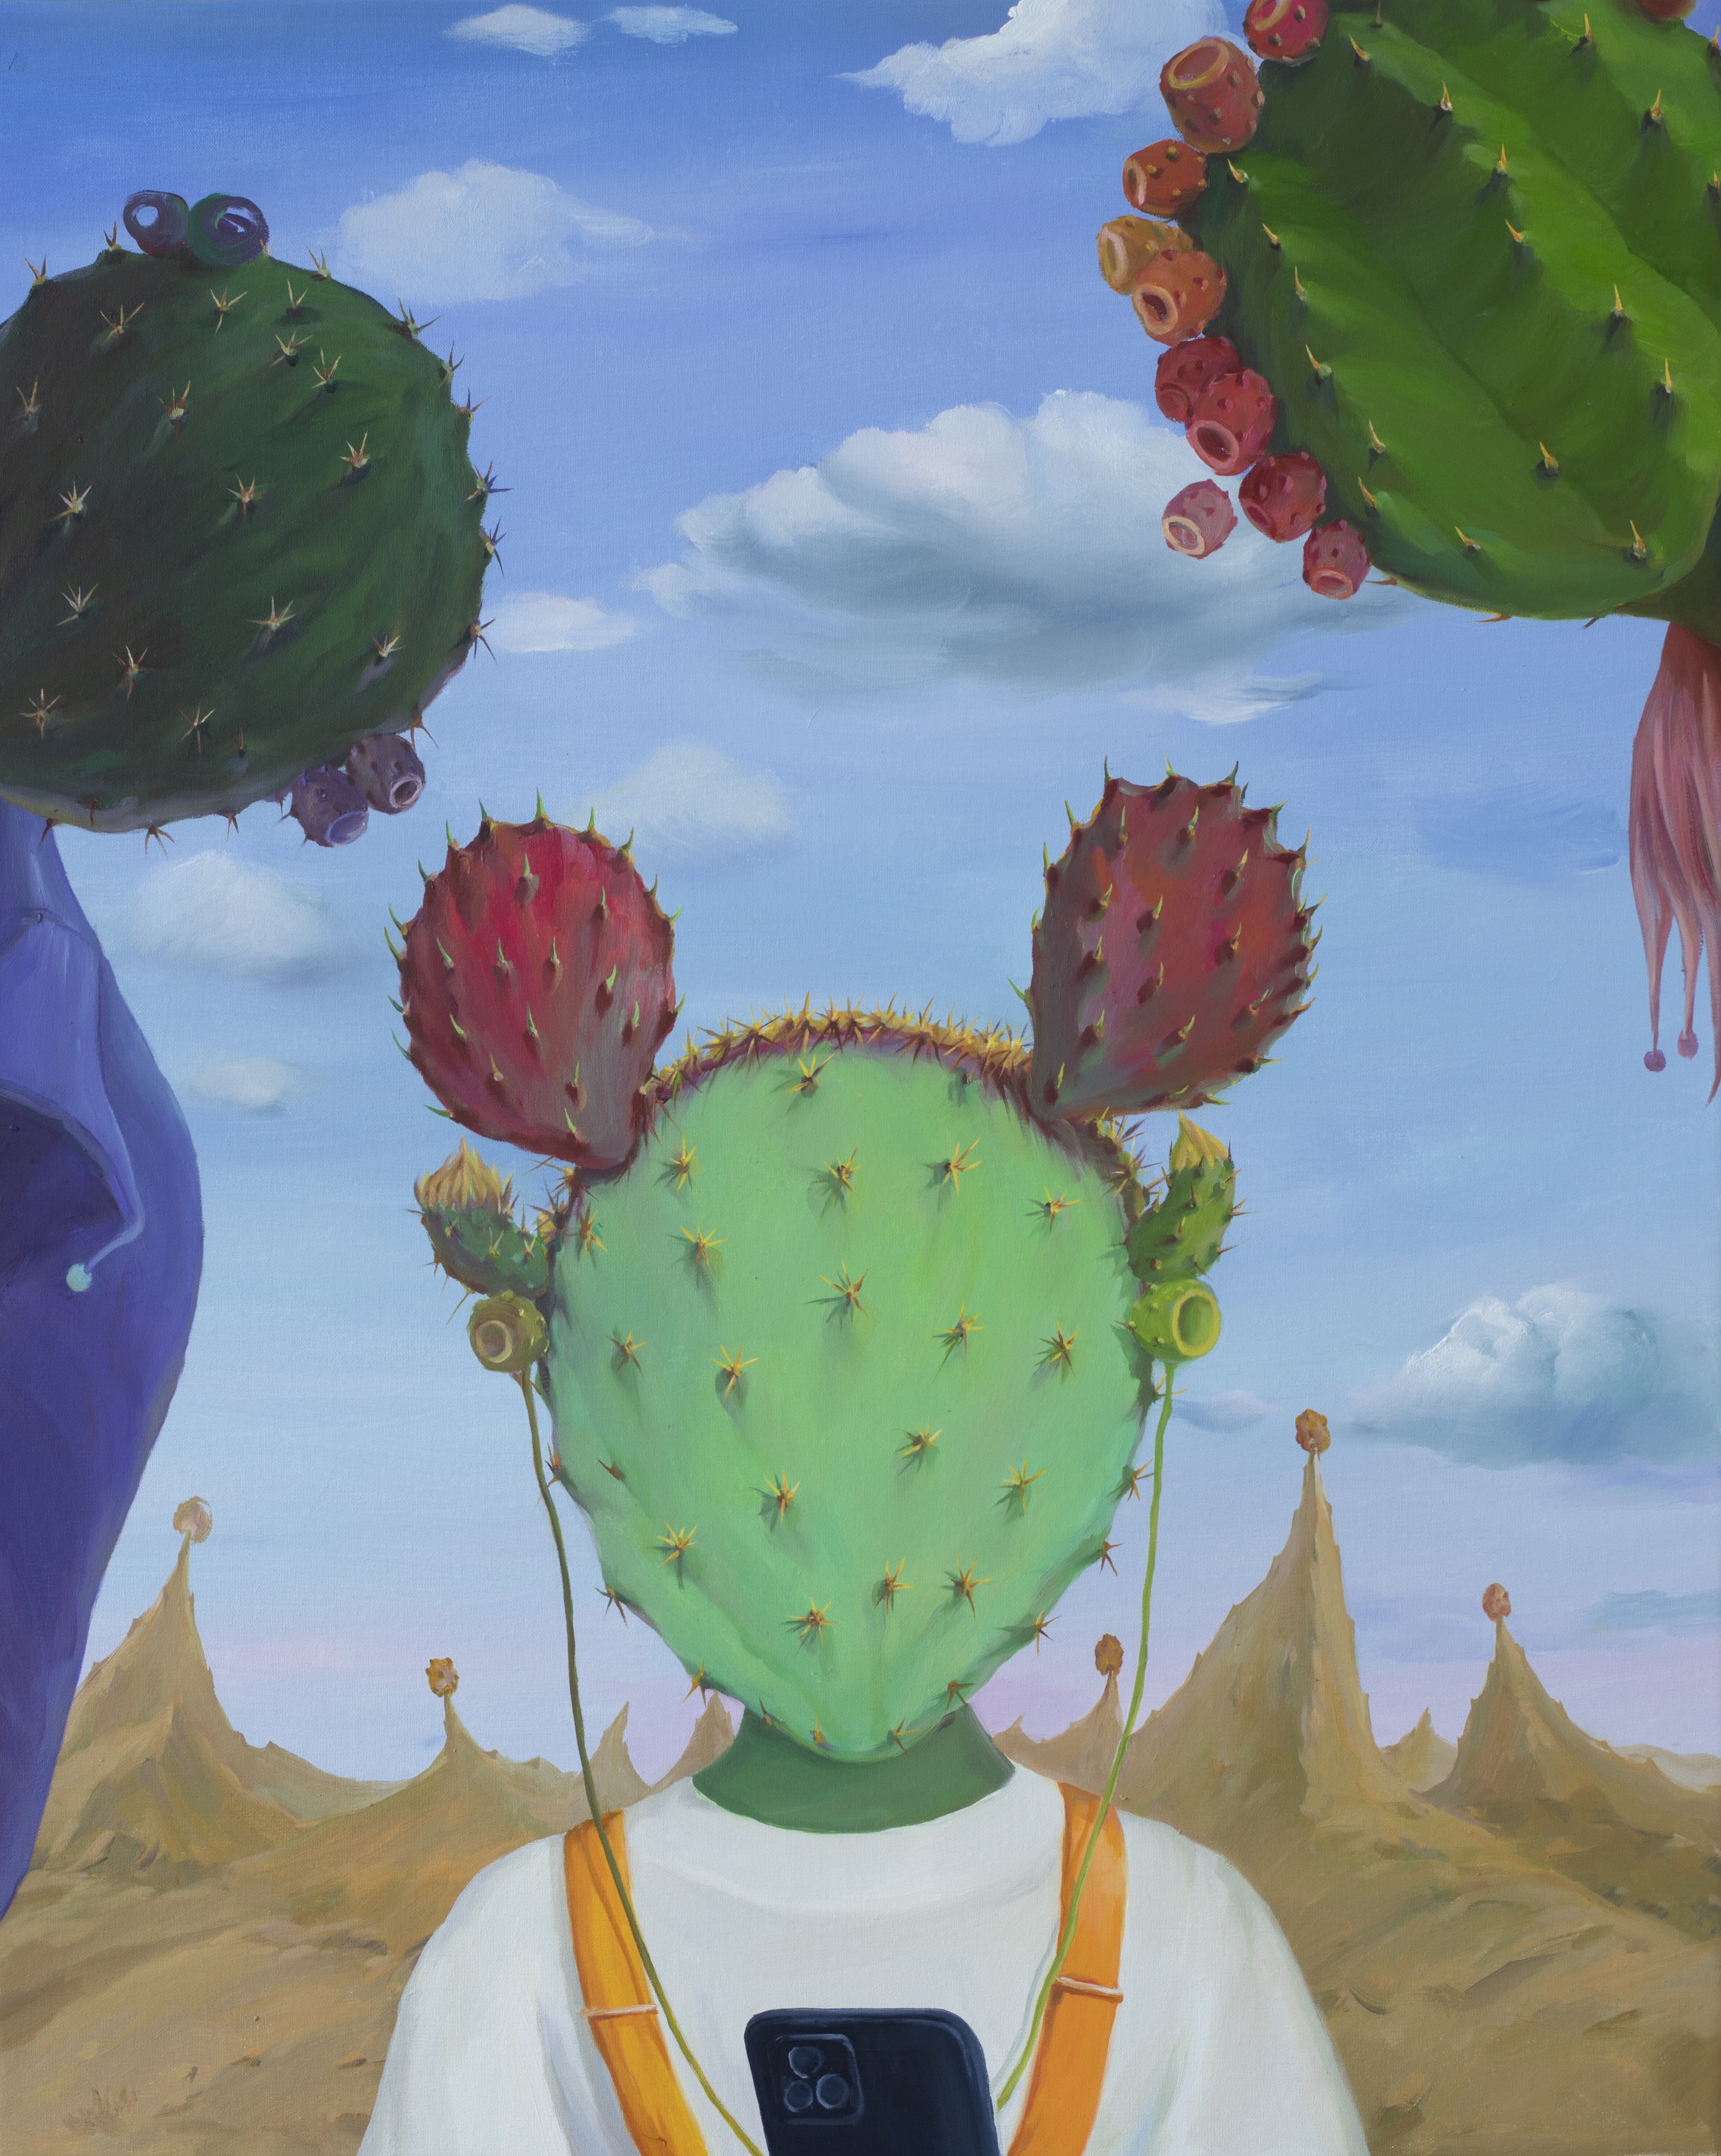 Cactus family by Jingyi Wang